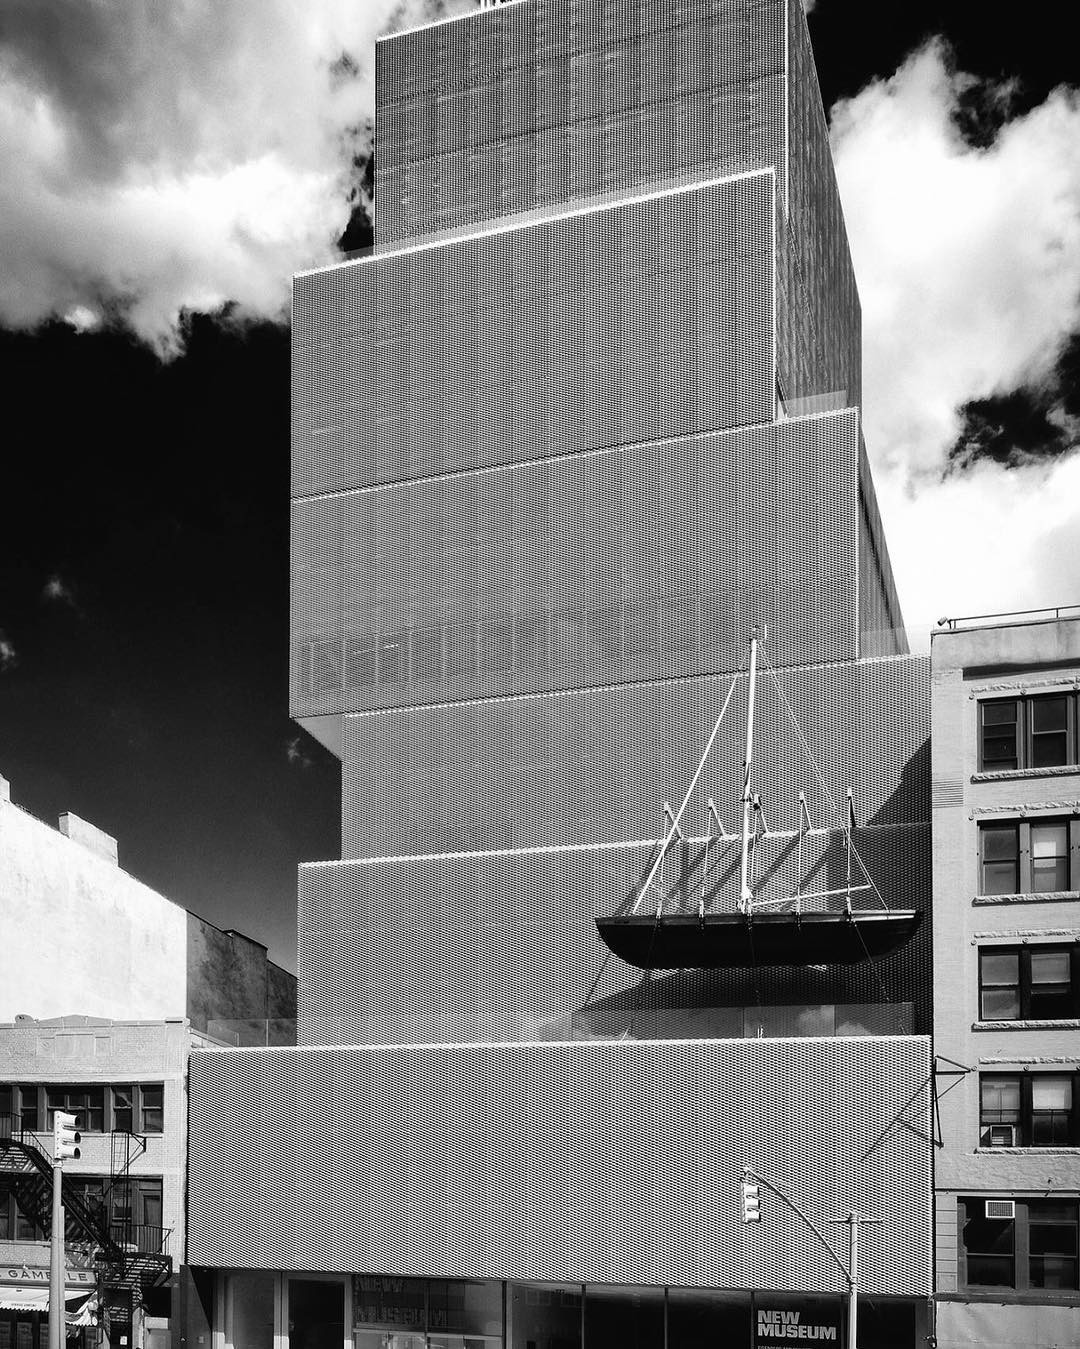 Чёрно-белые архитектурные фотографии от Алессио Форлано